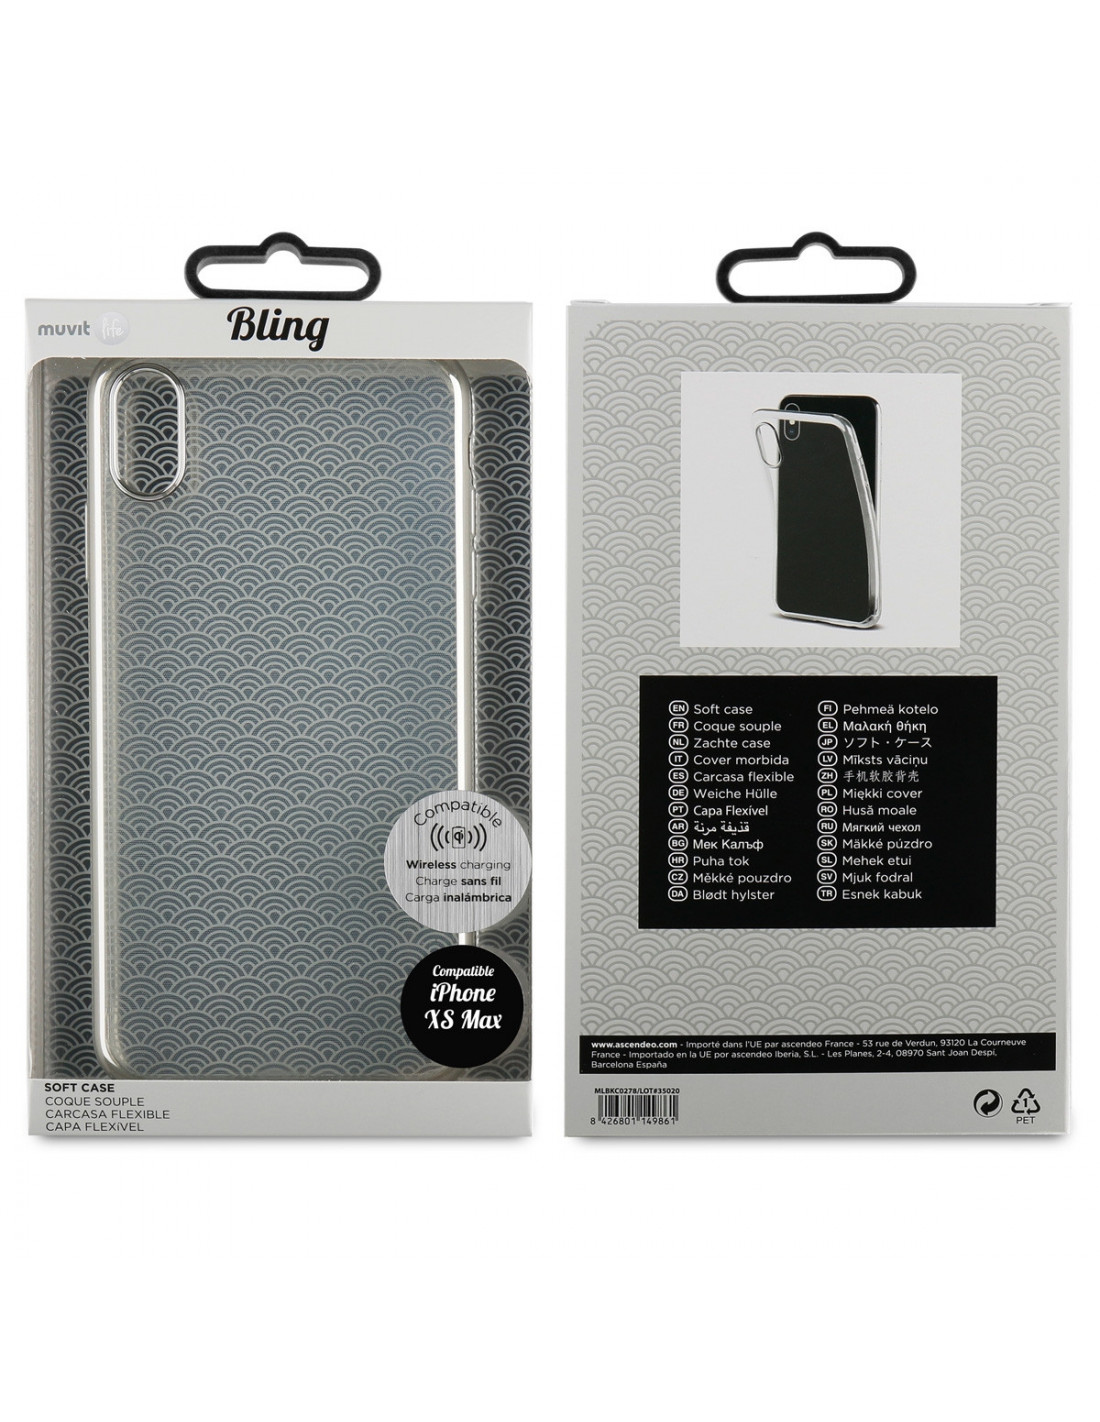 LV iPhone 5C Covers Folio Black Sleeve Coque Fundas Capa Para